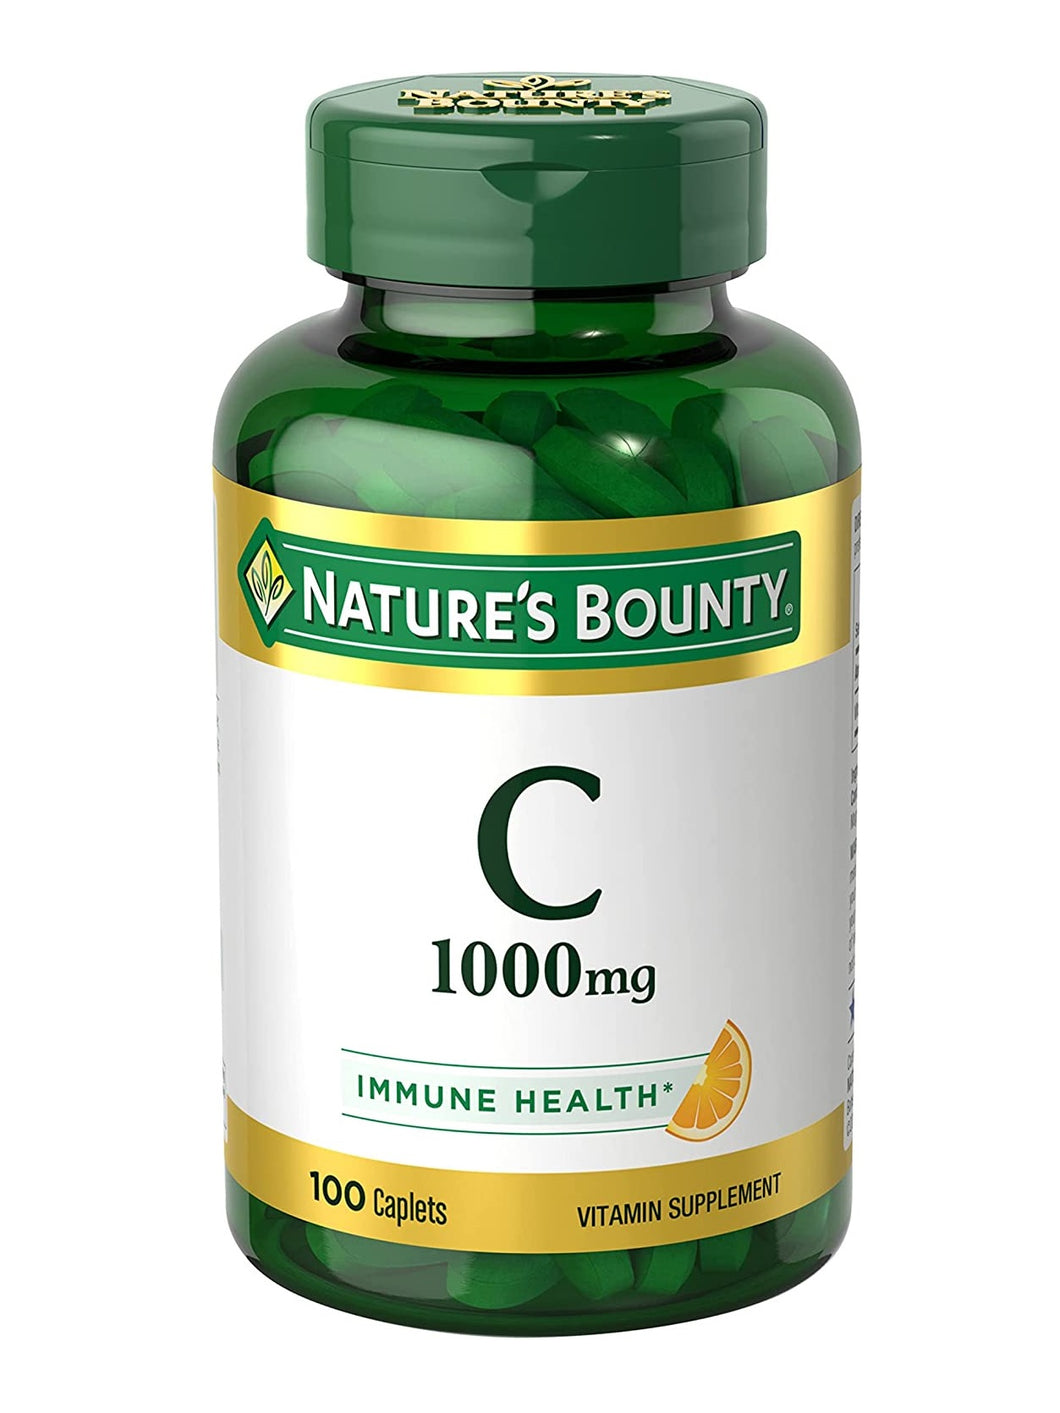 Vitamina C de 1000 mg, 100 tabletas. Apoya el sistema inmune (defensas). Antioxidante. Nature's Bounty.